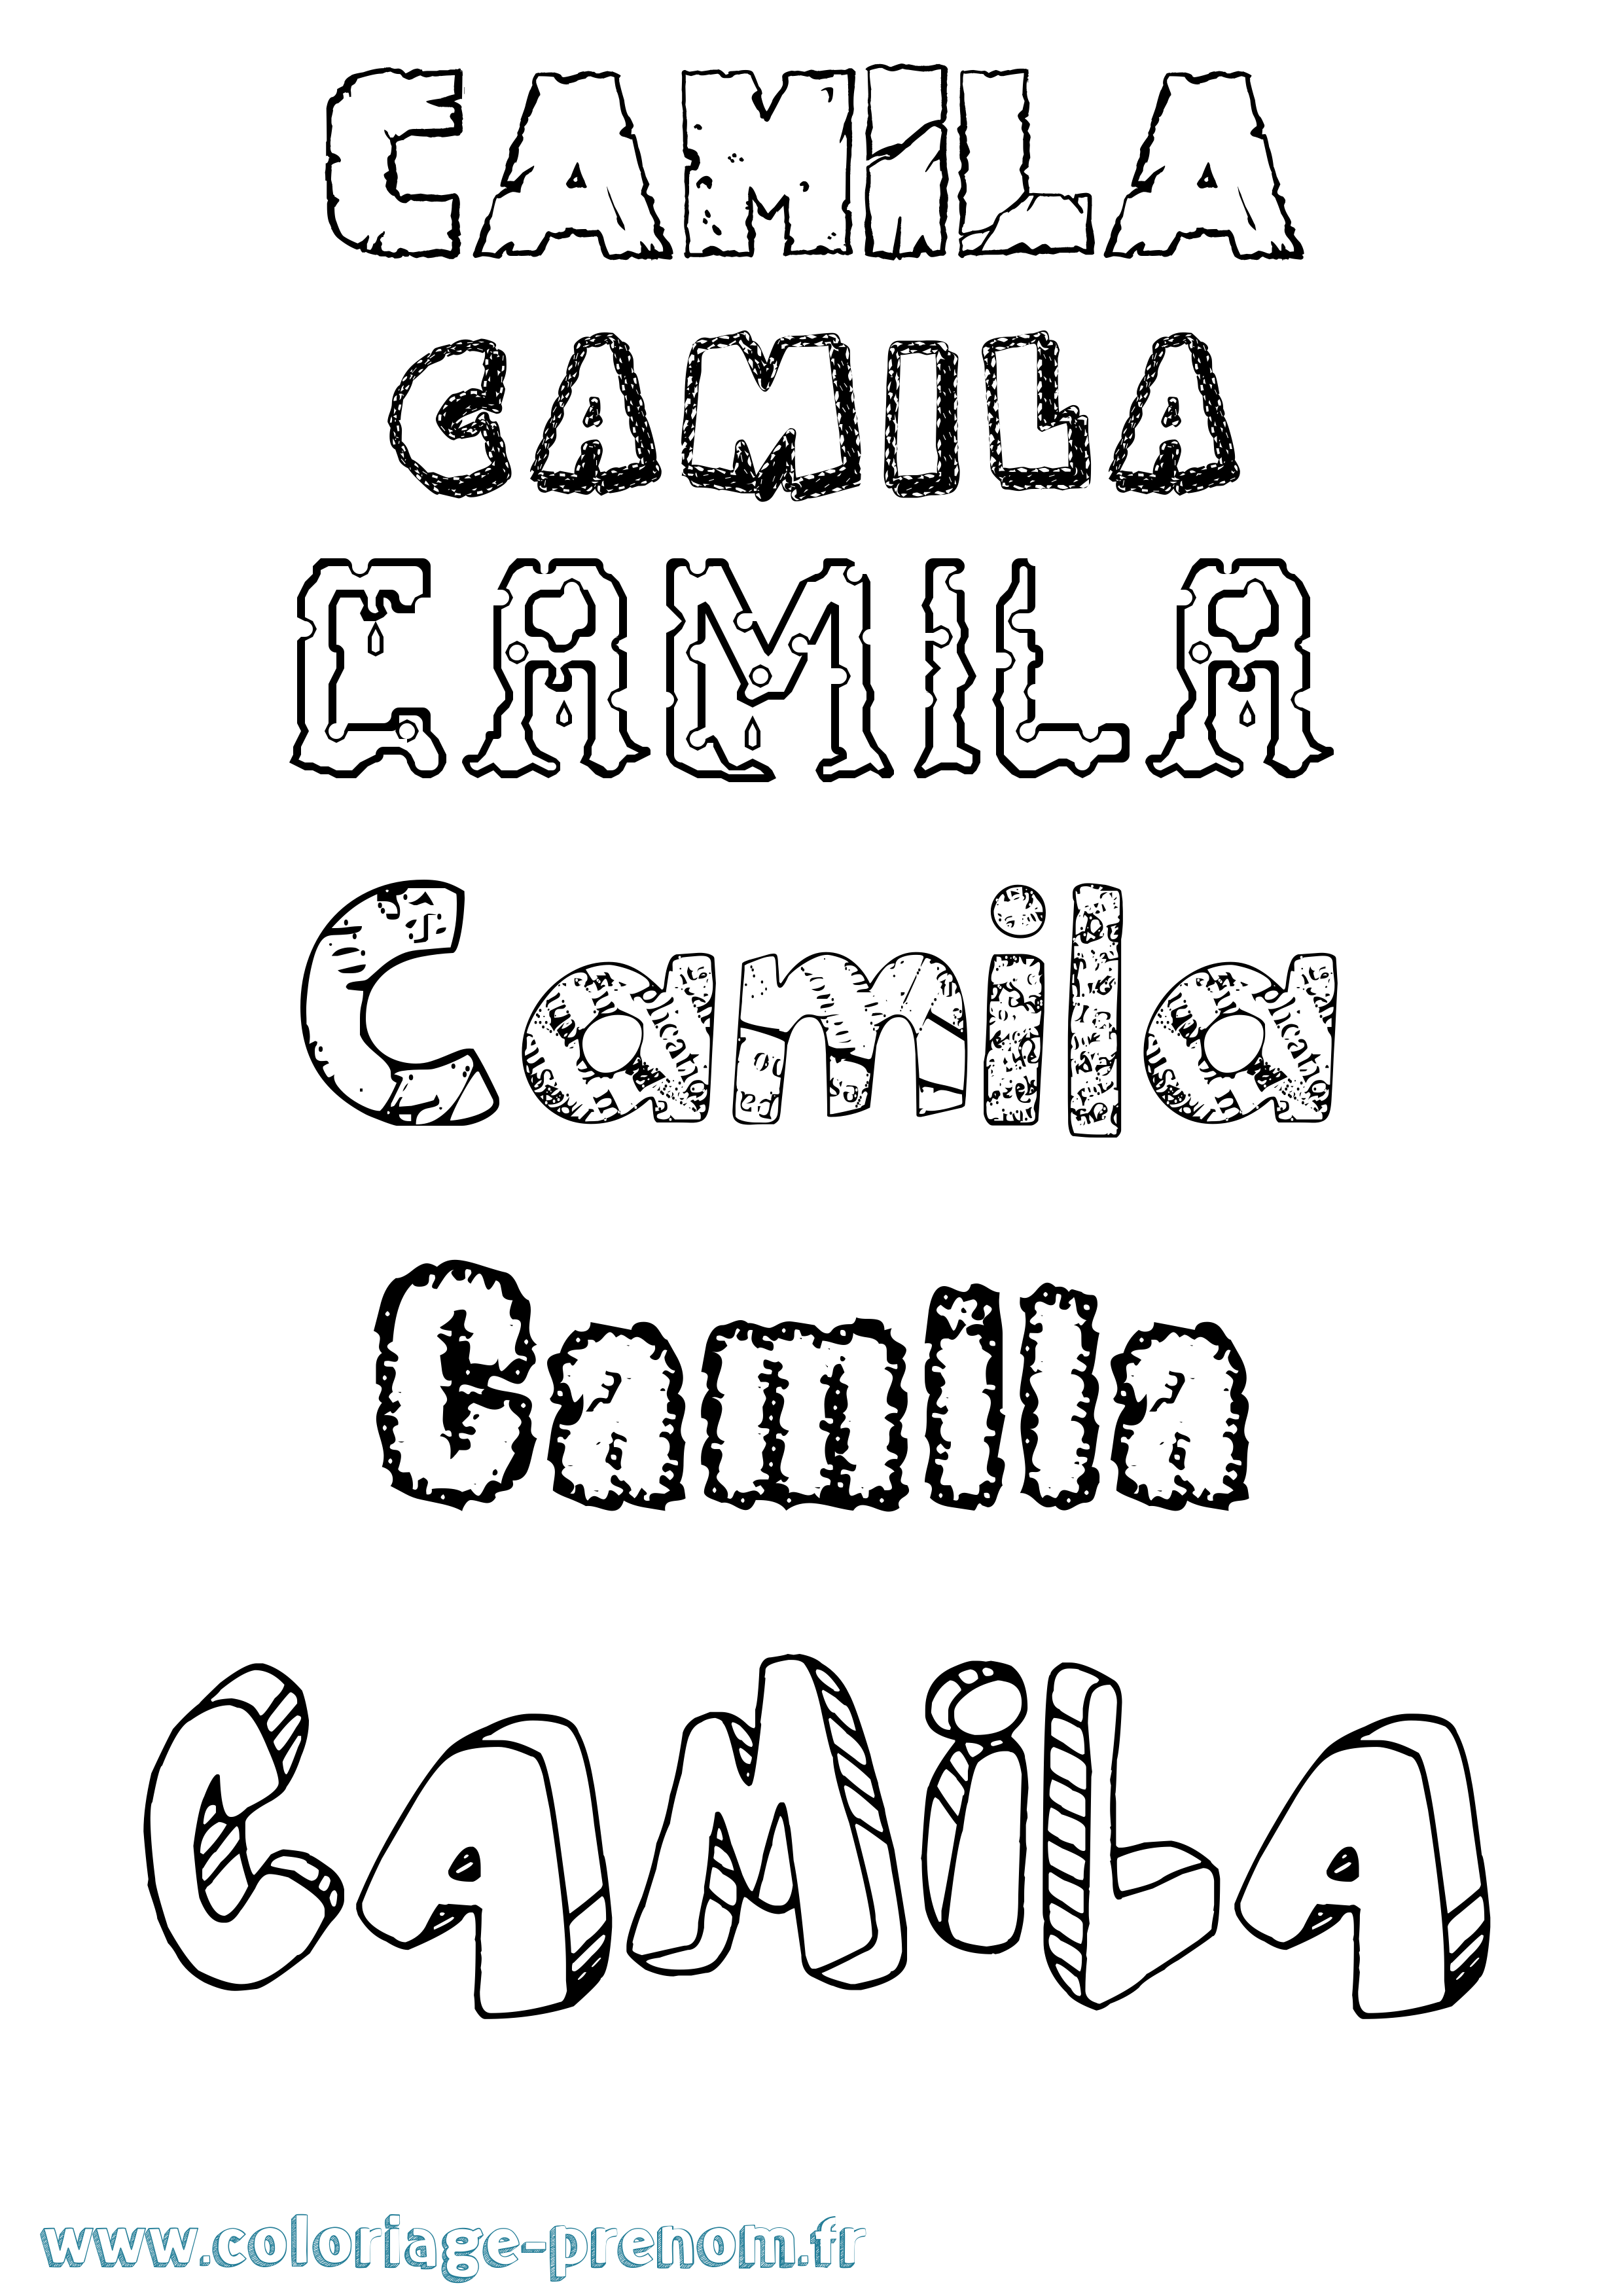 Coloriage prénom Camila